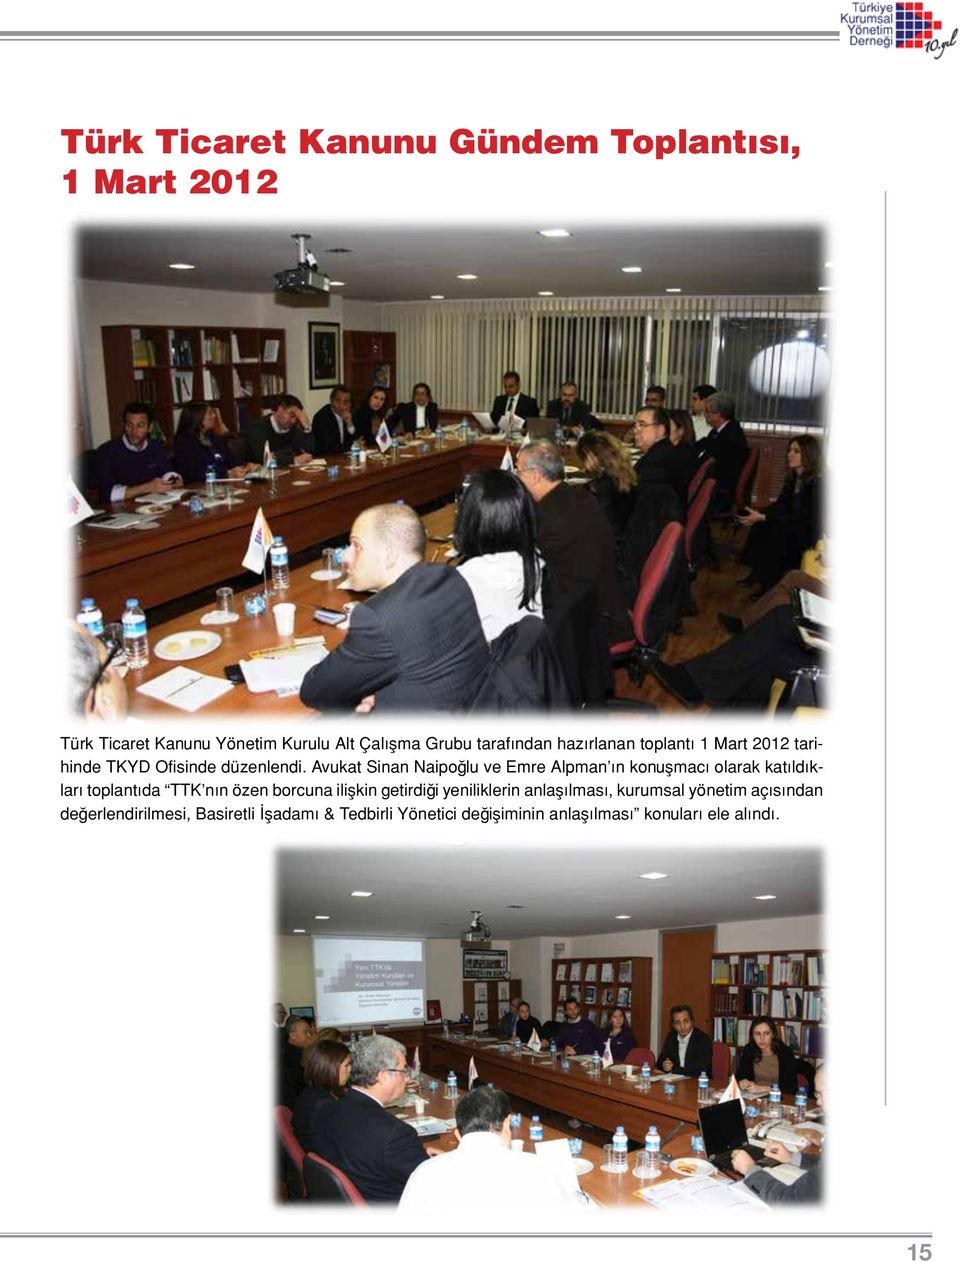 Avukat Sinan Naipoğlu ve Emre Alpman ın konuşmacı olarak katıldıkları toplantıda TTK nın özen borcuna ilişkin